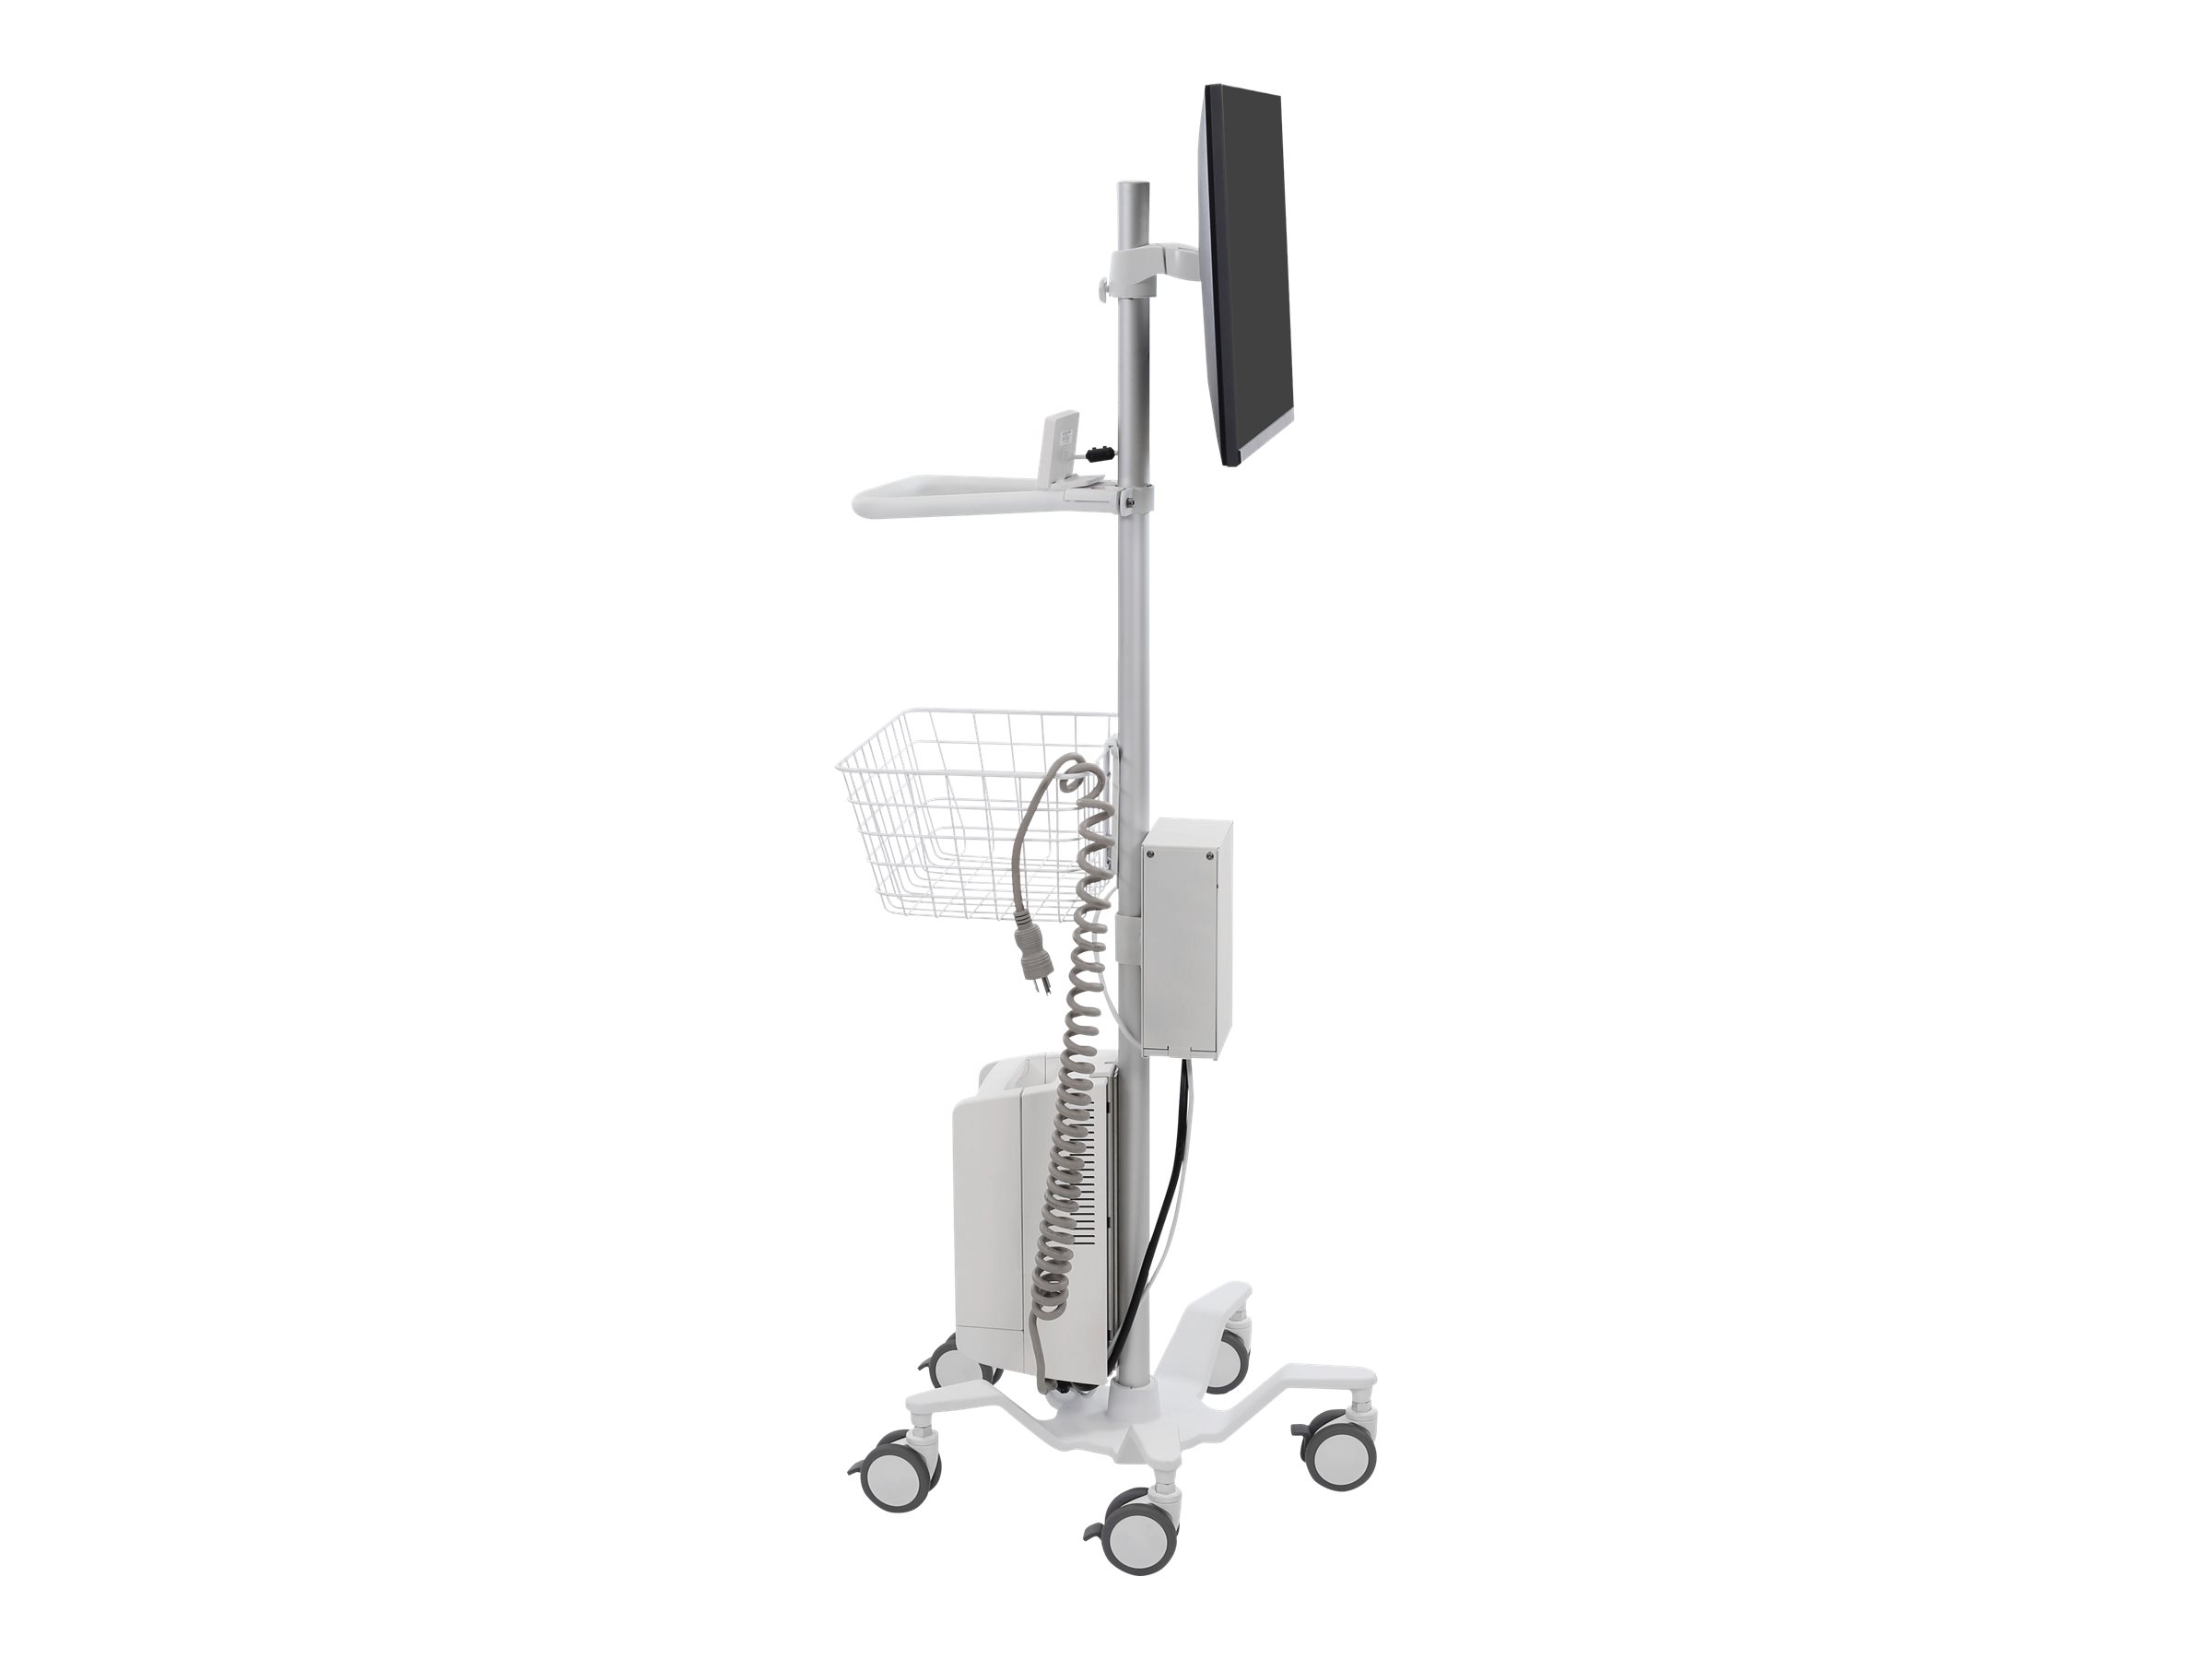 Ergotron Pole Cart - Chariot - pour écran LCD / tablette - blanc brillant - Taille d'écran : jusqu'à 24 pouces - 24-818-211 - Chariots